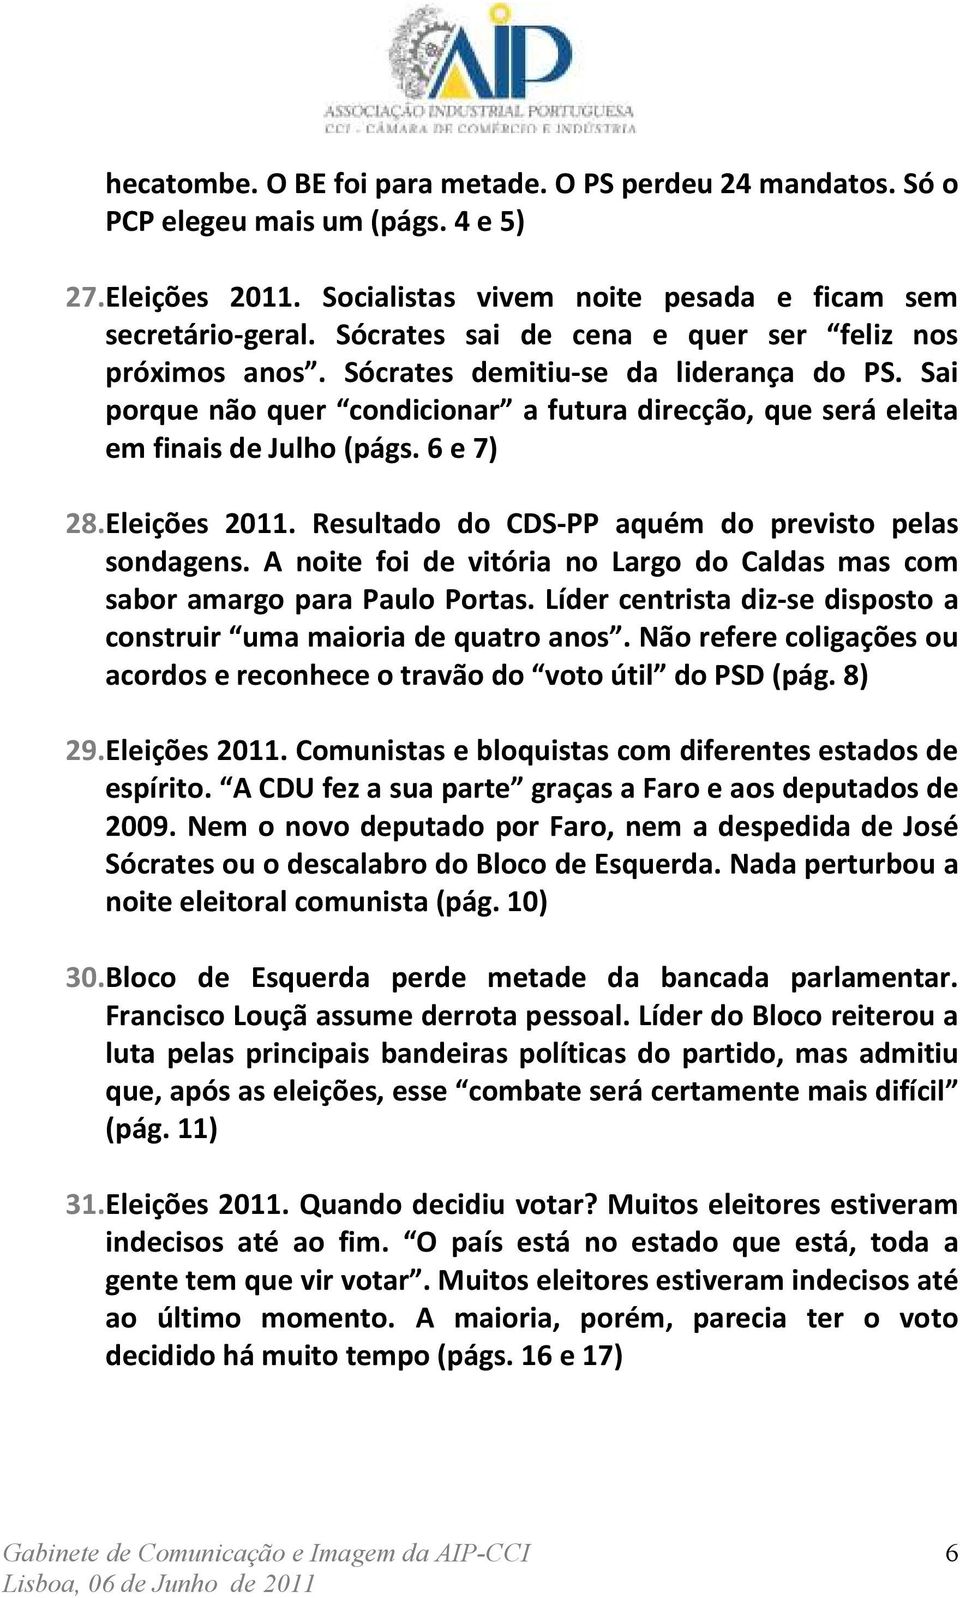 Eleições 2011. Resultado do CDS-PP aquém do previsto pelas sondagens. A noite foi de vitória no Largo do Caldas mas com sabor amargo para Paulo Portas.